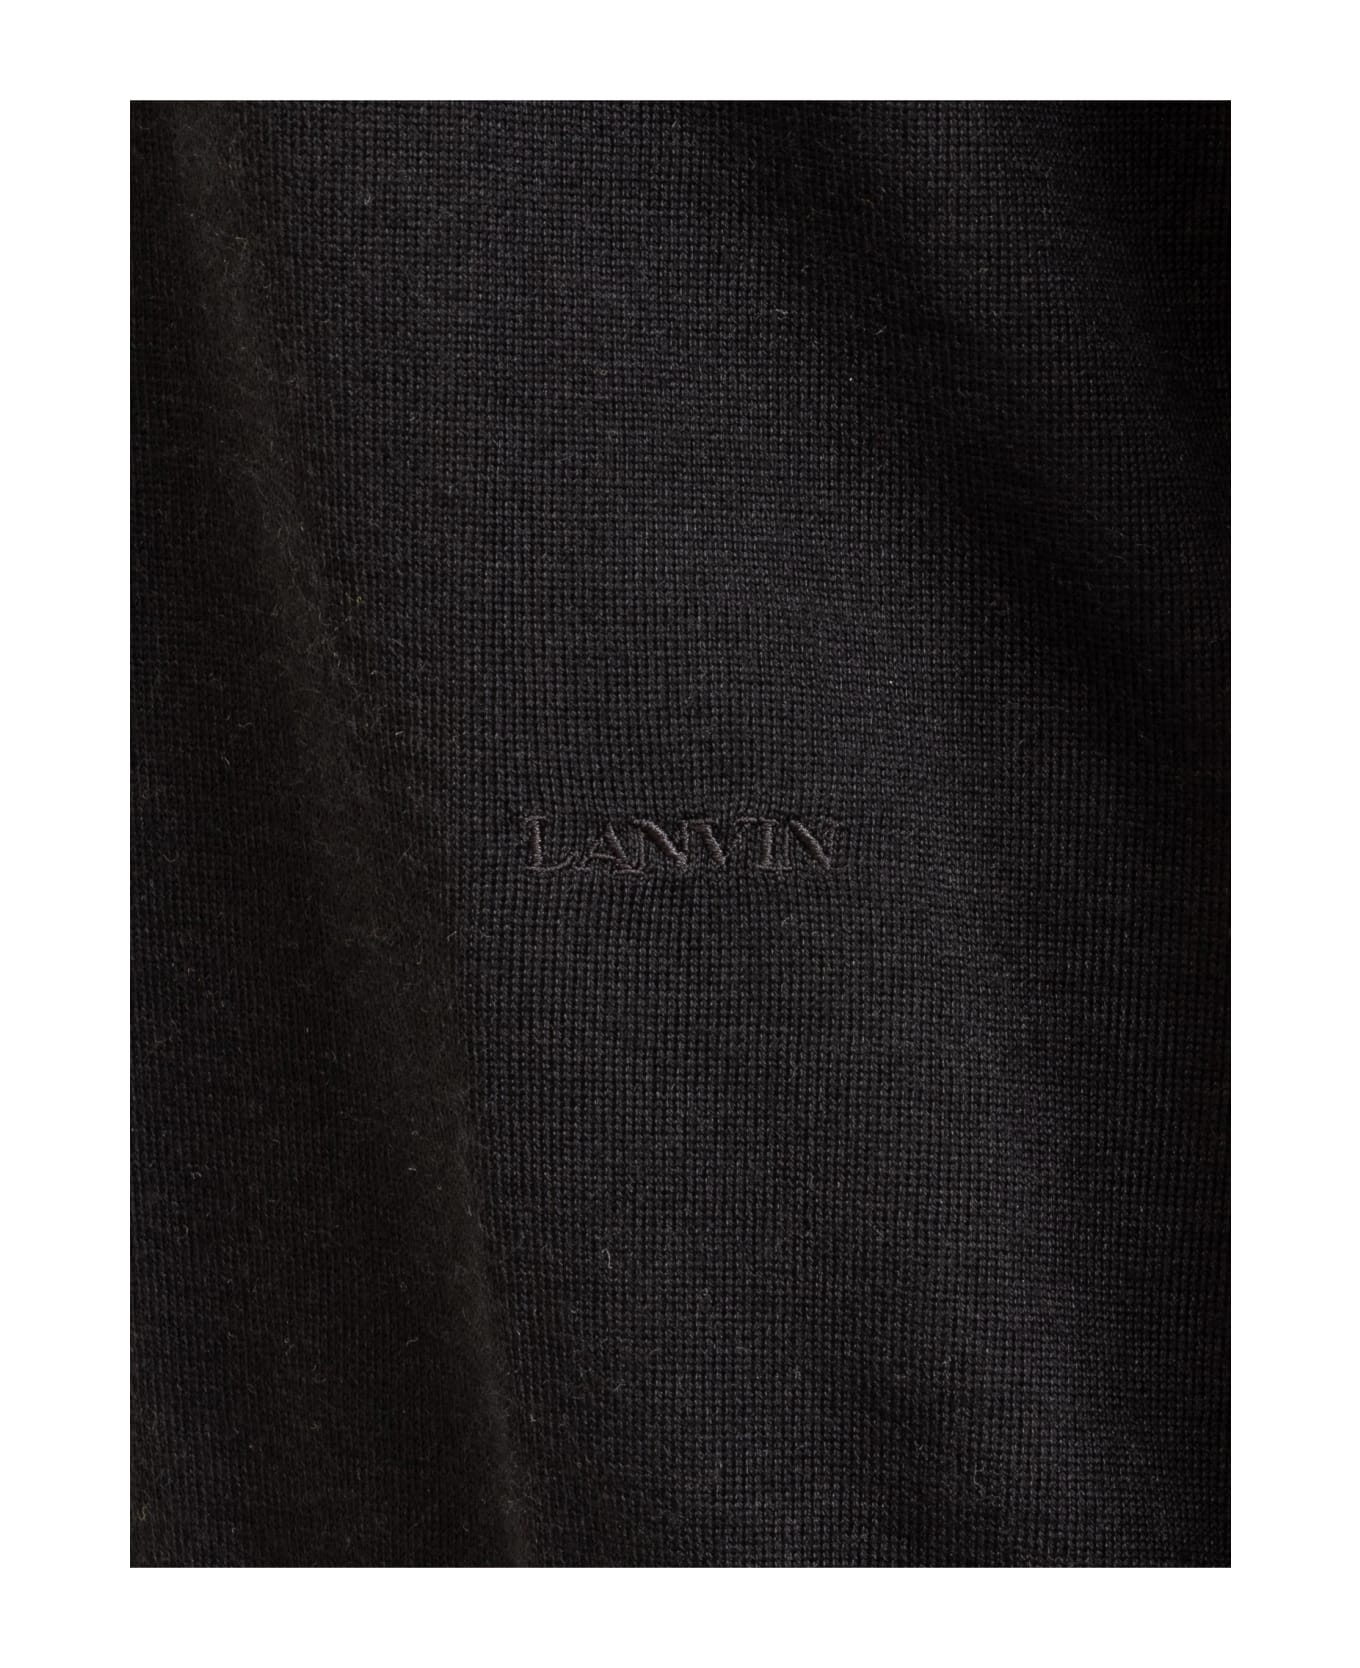 Lanvin Turtleneck With Logo - BLACK ニットウェア